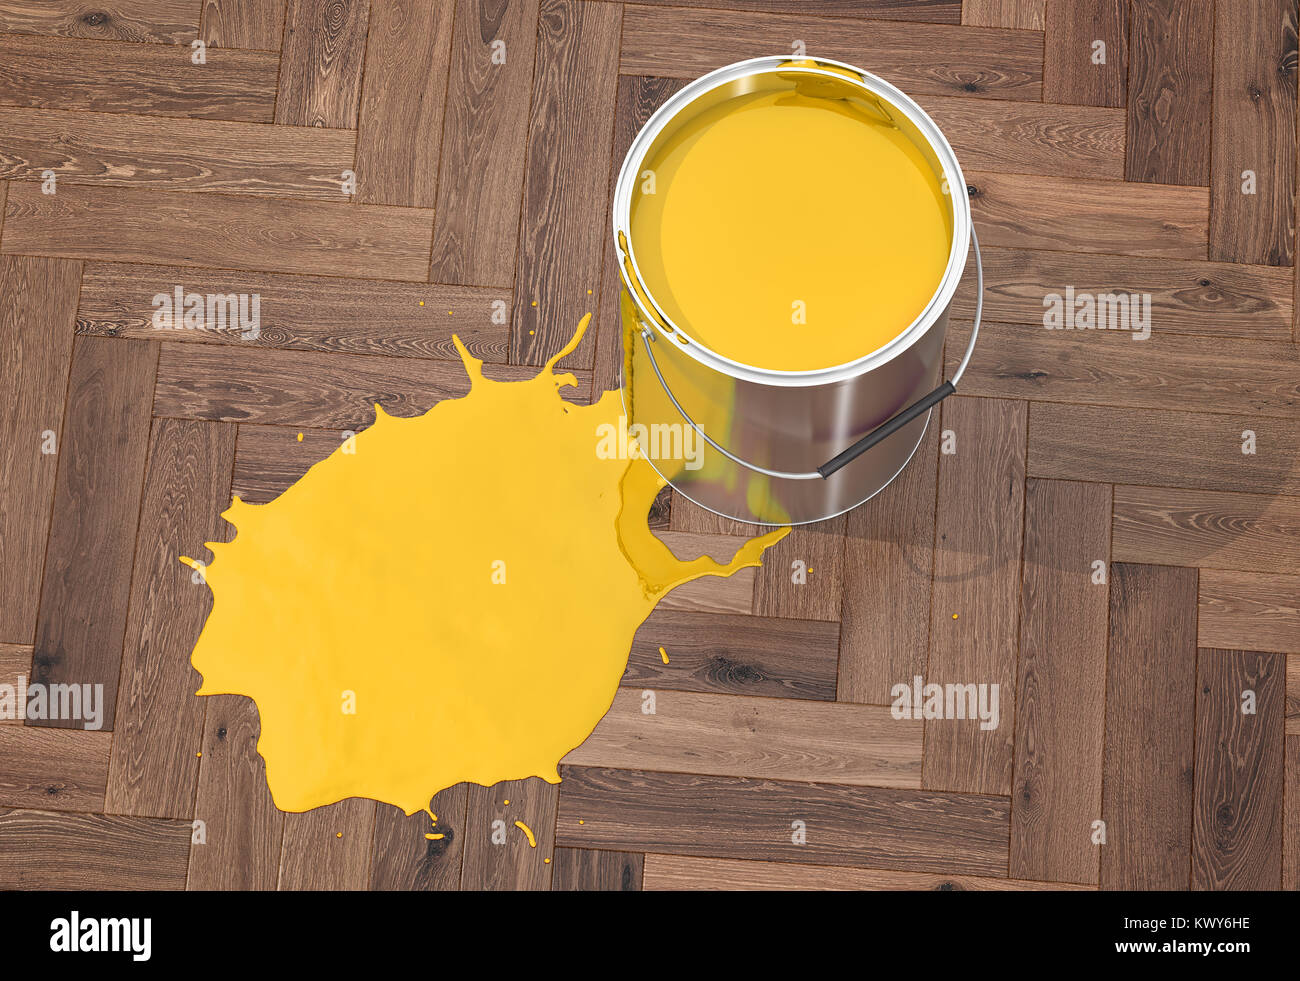 Silver Paint Bucket on wooden floor - 3D Rendering Stock Photo